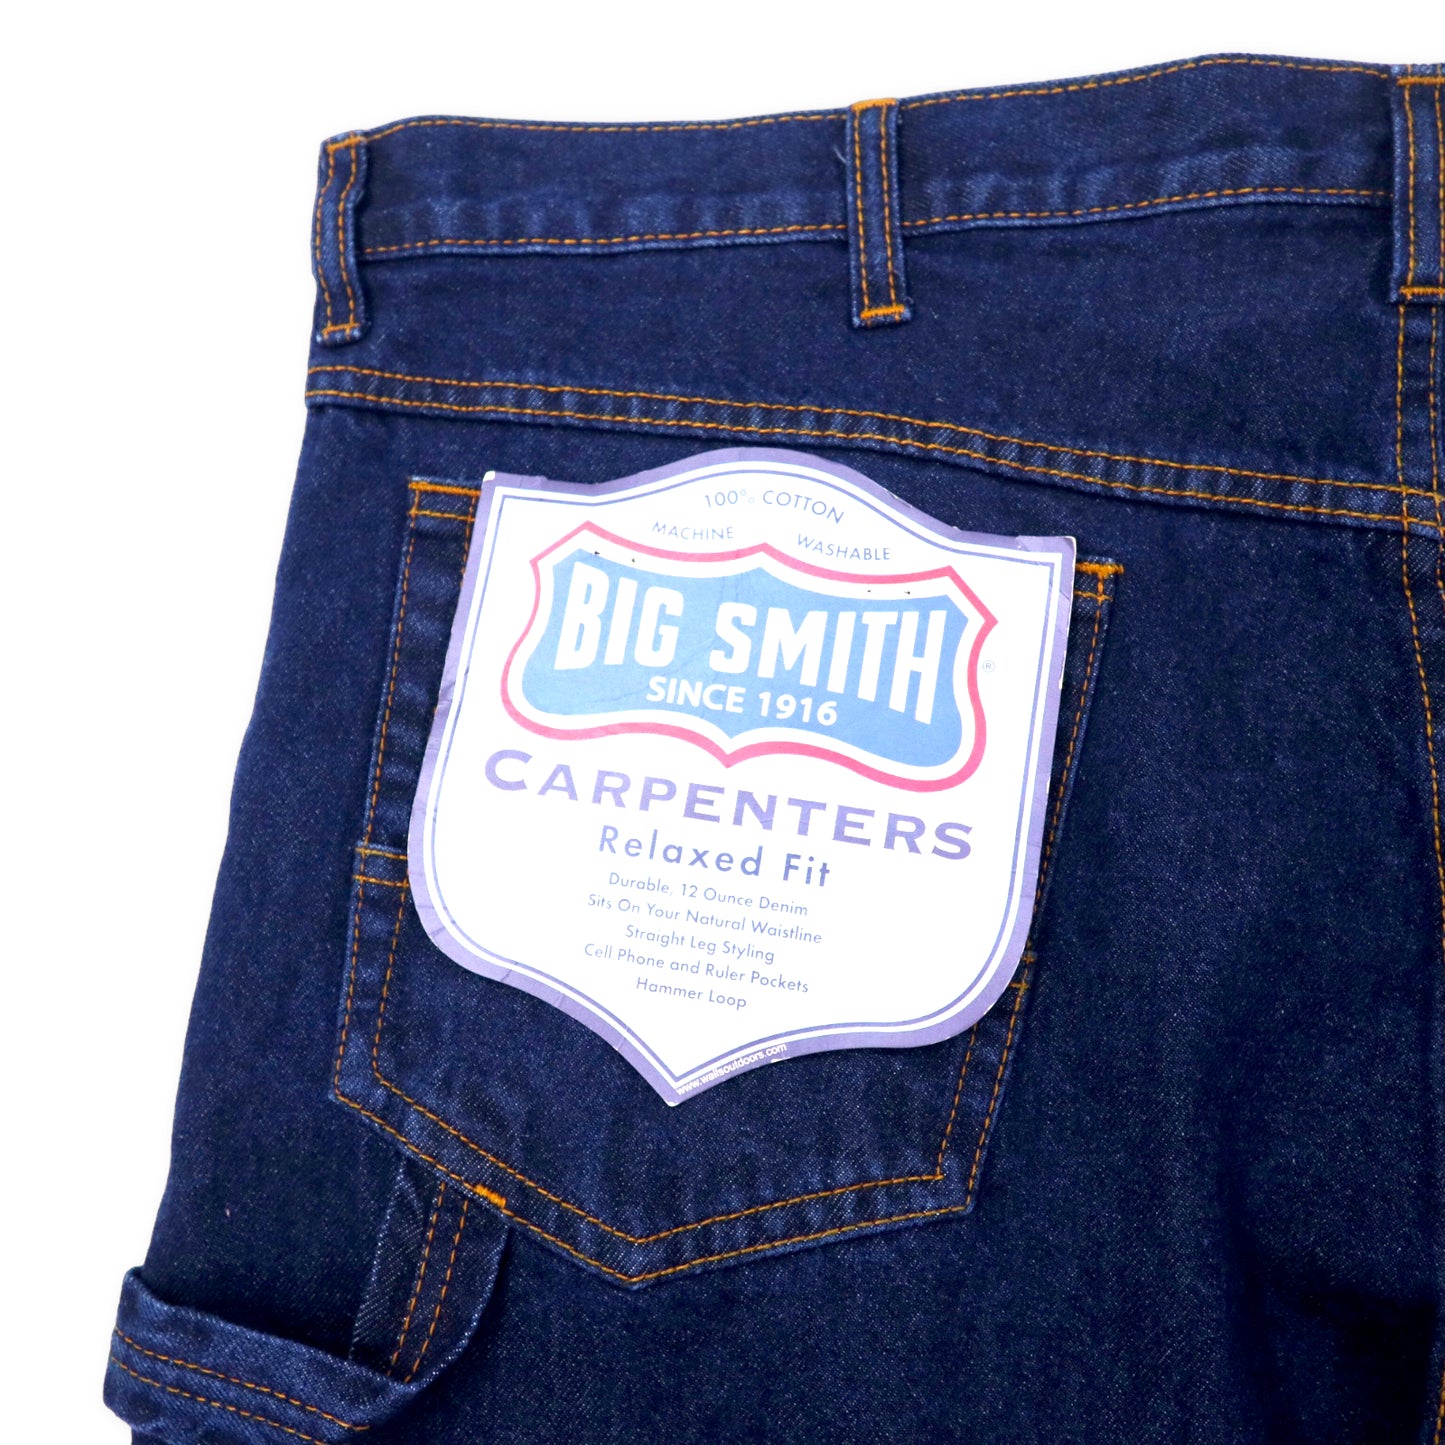 BIG SMITH デニム ペインターパンツ 40 ブルー CARPENTERS Relaxed Fit デッドストック 未使用品